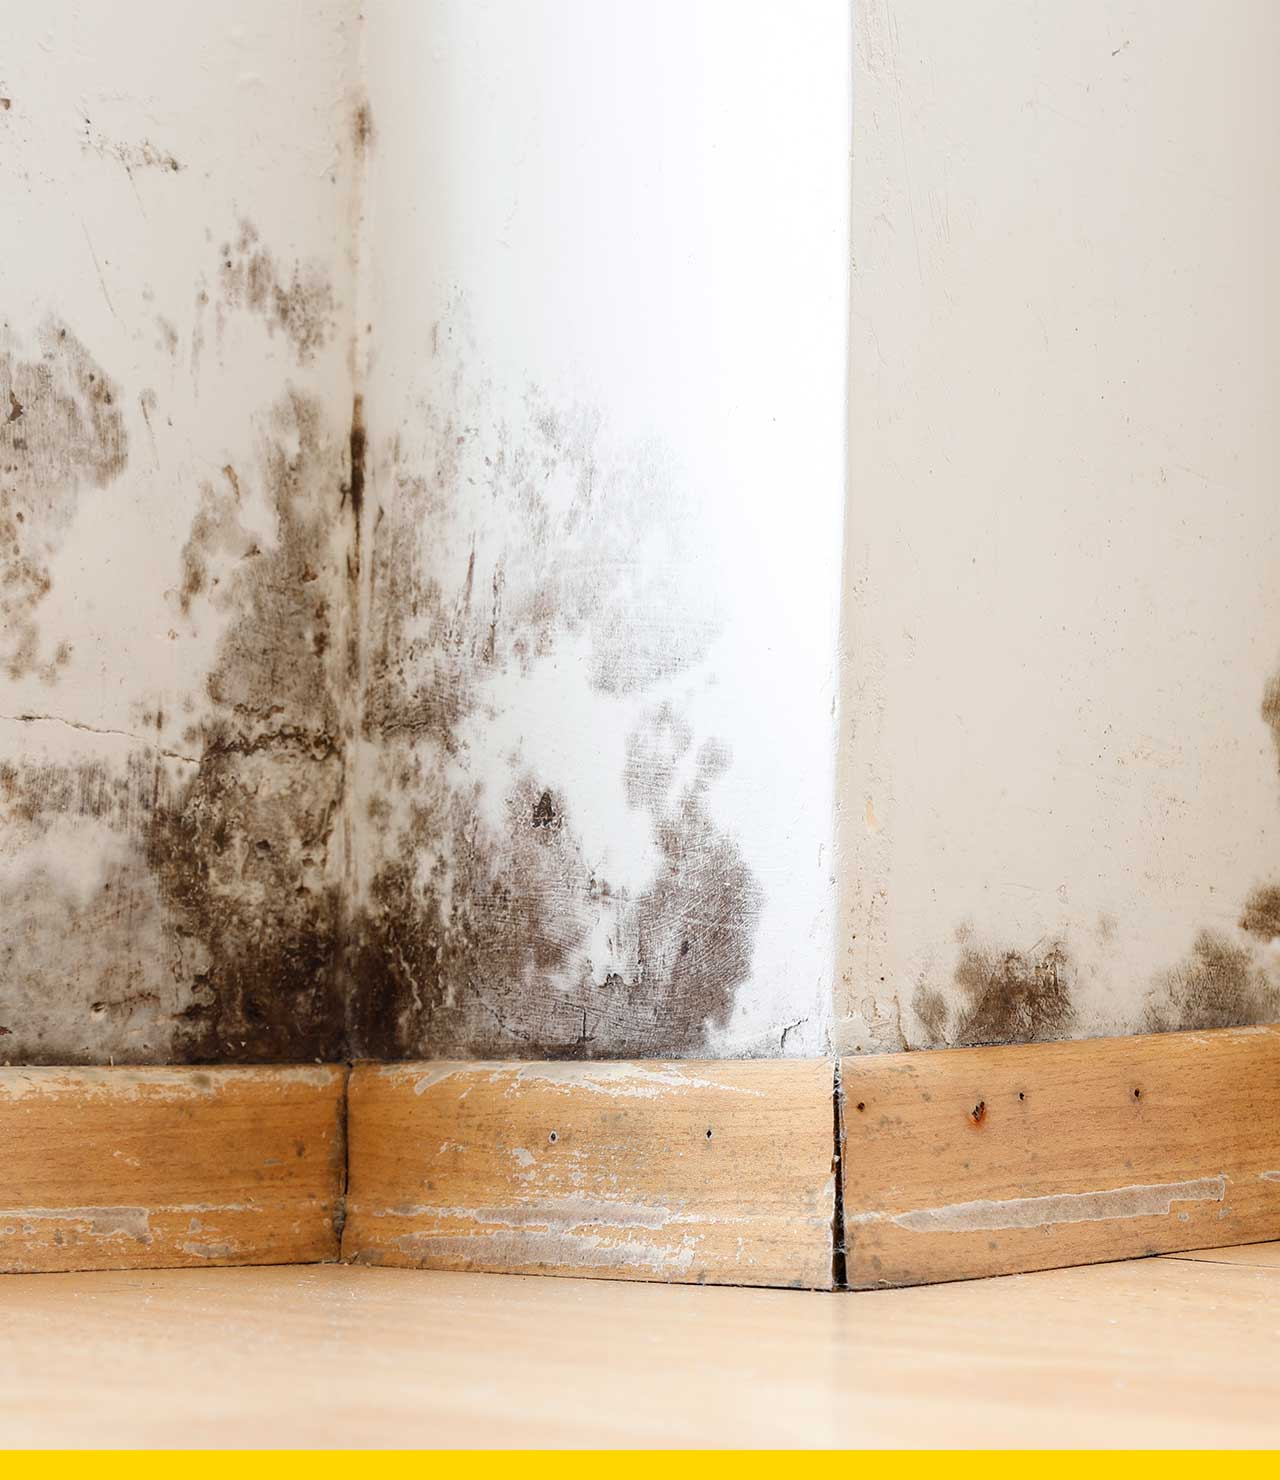 Quitar humedad en paredes interior de viviendas